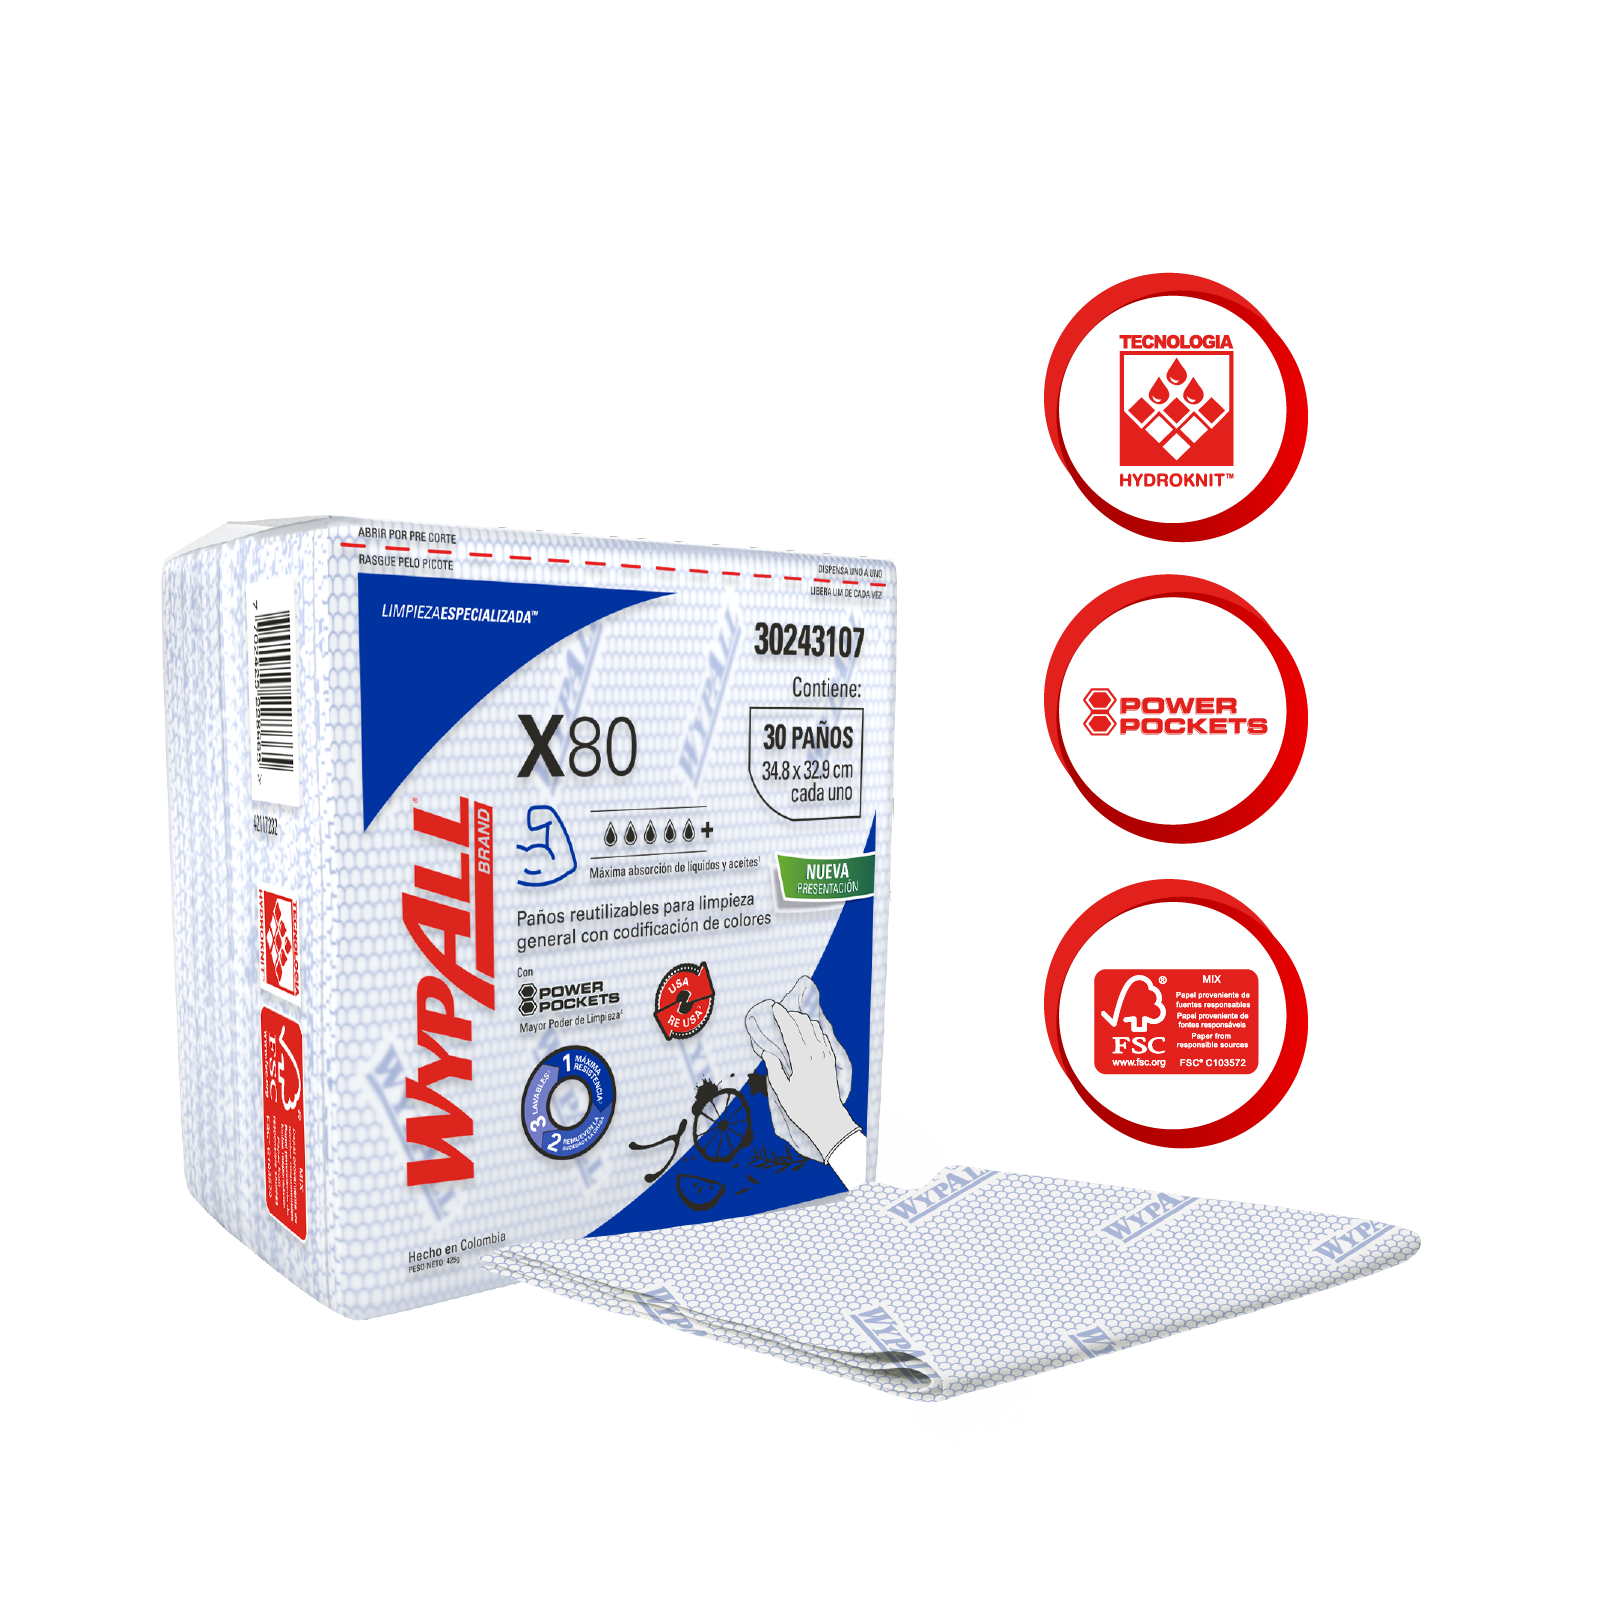 WypAll® X80 - Paños de limpieza. Color azul, doblados, con Power Pockets, 30 paños, 10 paquetes/caja, 300 paños/caja, 30243107 - S061511549